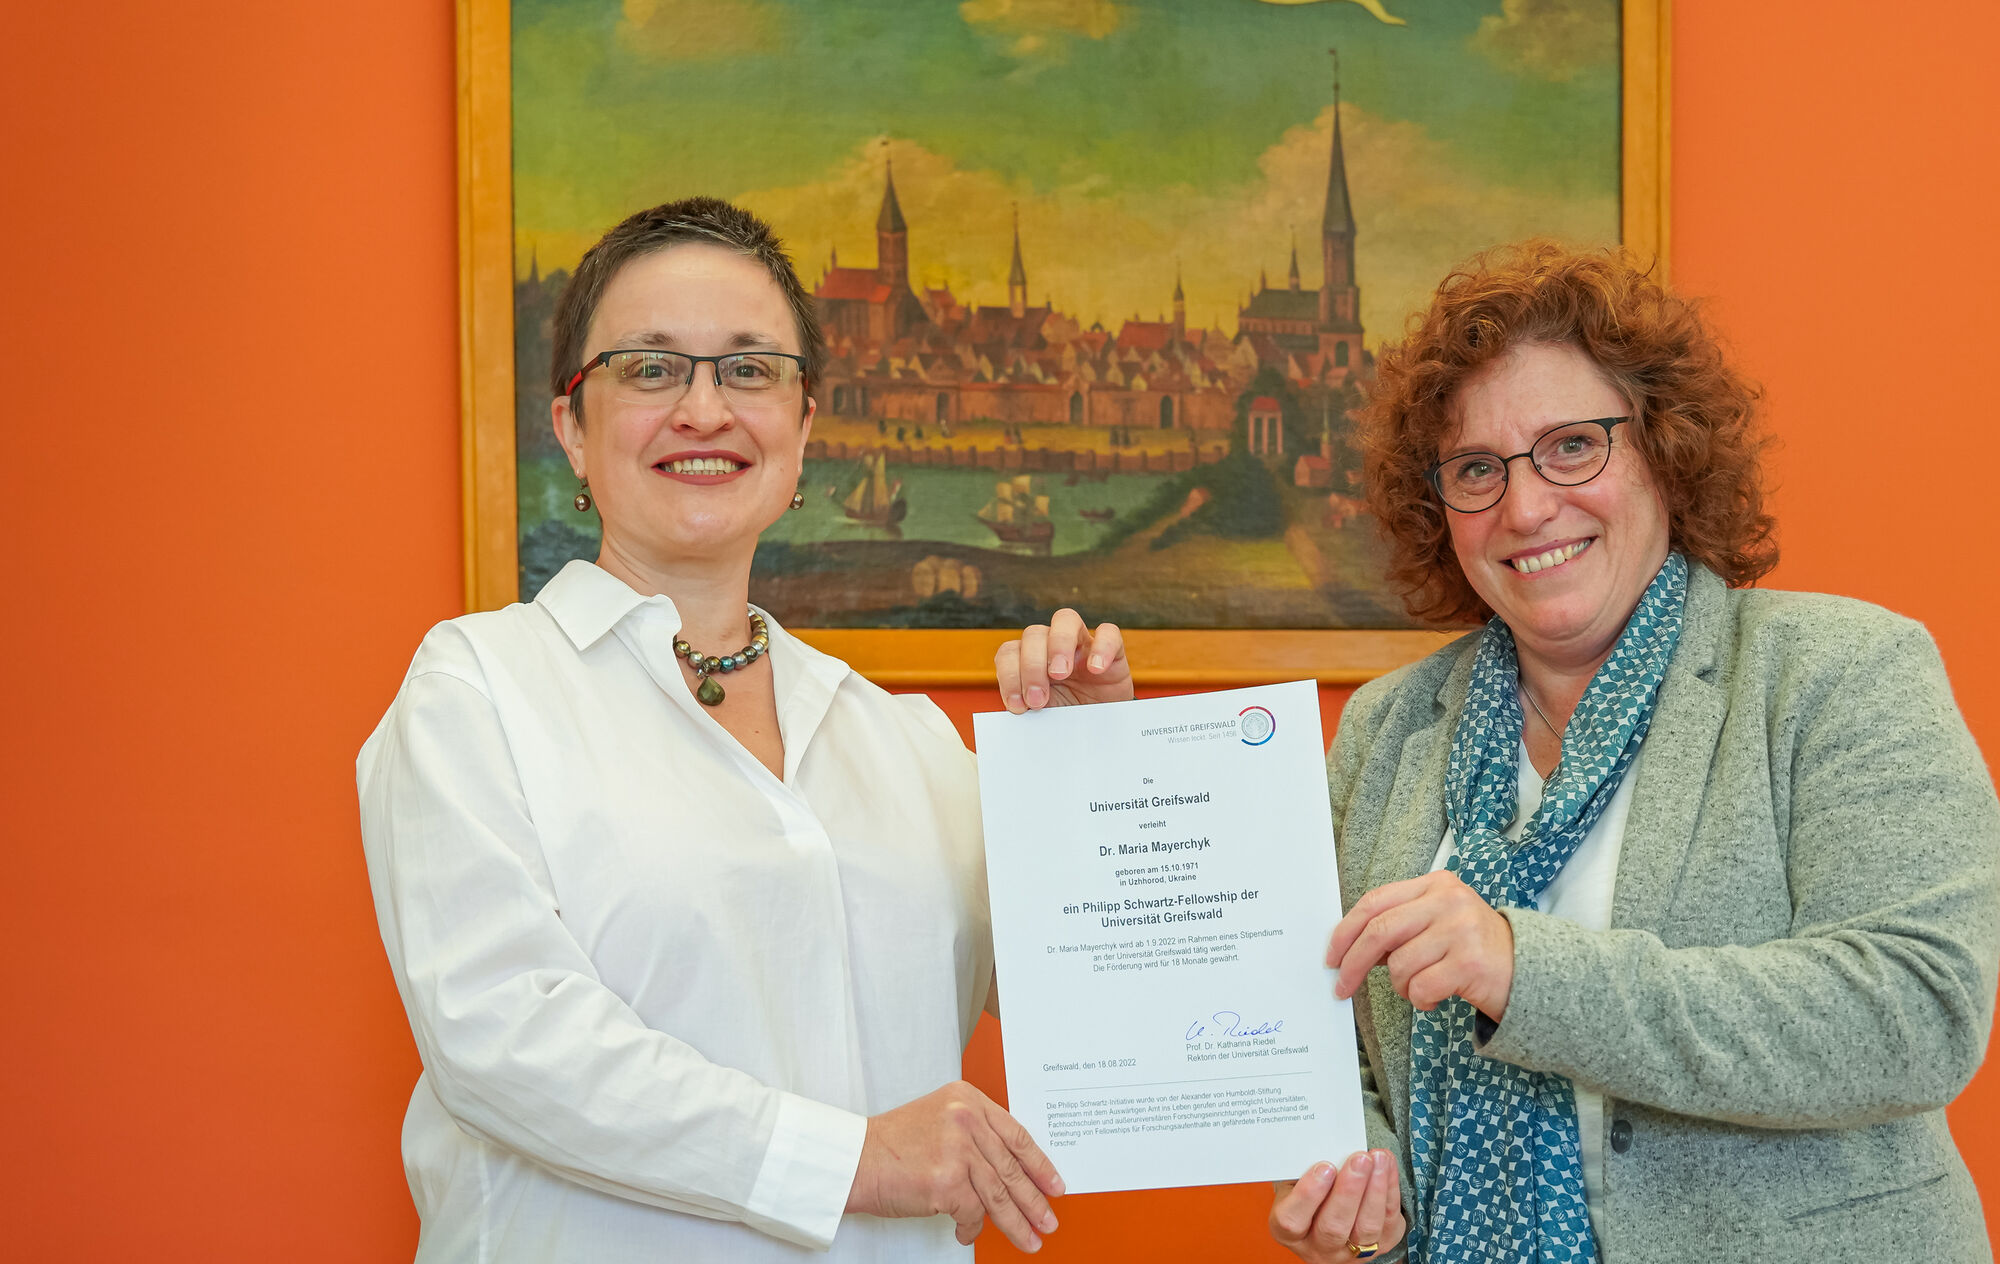 Die Rektorin der Universität Greifswald (Prof. Riedel) überreicht der ukrainischen Wissenchaftlerin Dr. Mayerchyk eine Urkunde über ein Philipp-Schwartz-Stipendium